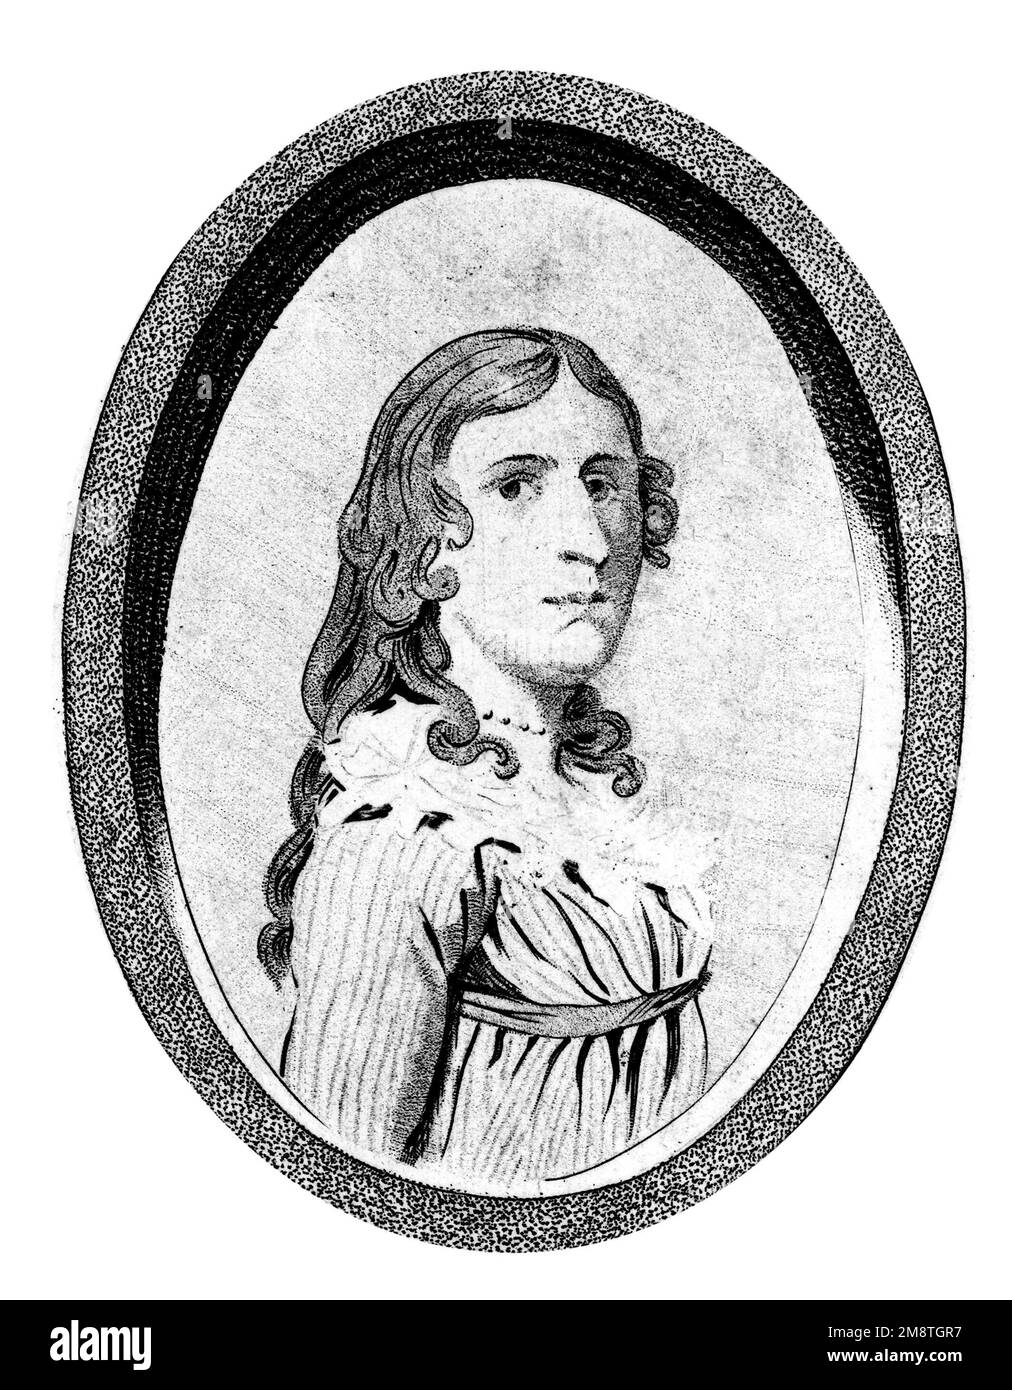 Ritratto dal frontespizio di un libro sulla vita di Deborah Sampson. Deborah Sampson Gannett (1760-1827) era una donna che si travestì da uomo, Robert Shirtliff, per unirsi all'Esercito continentale. Foto Stock